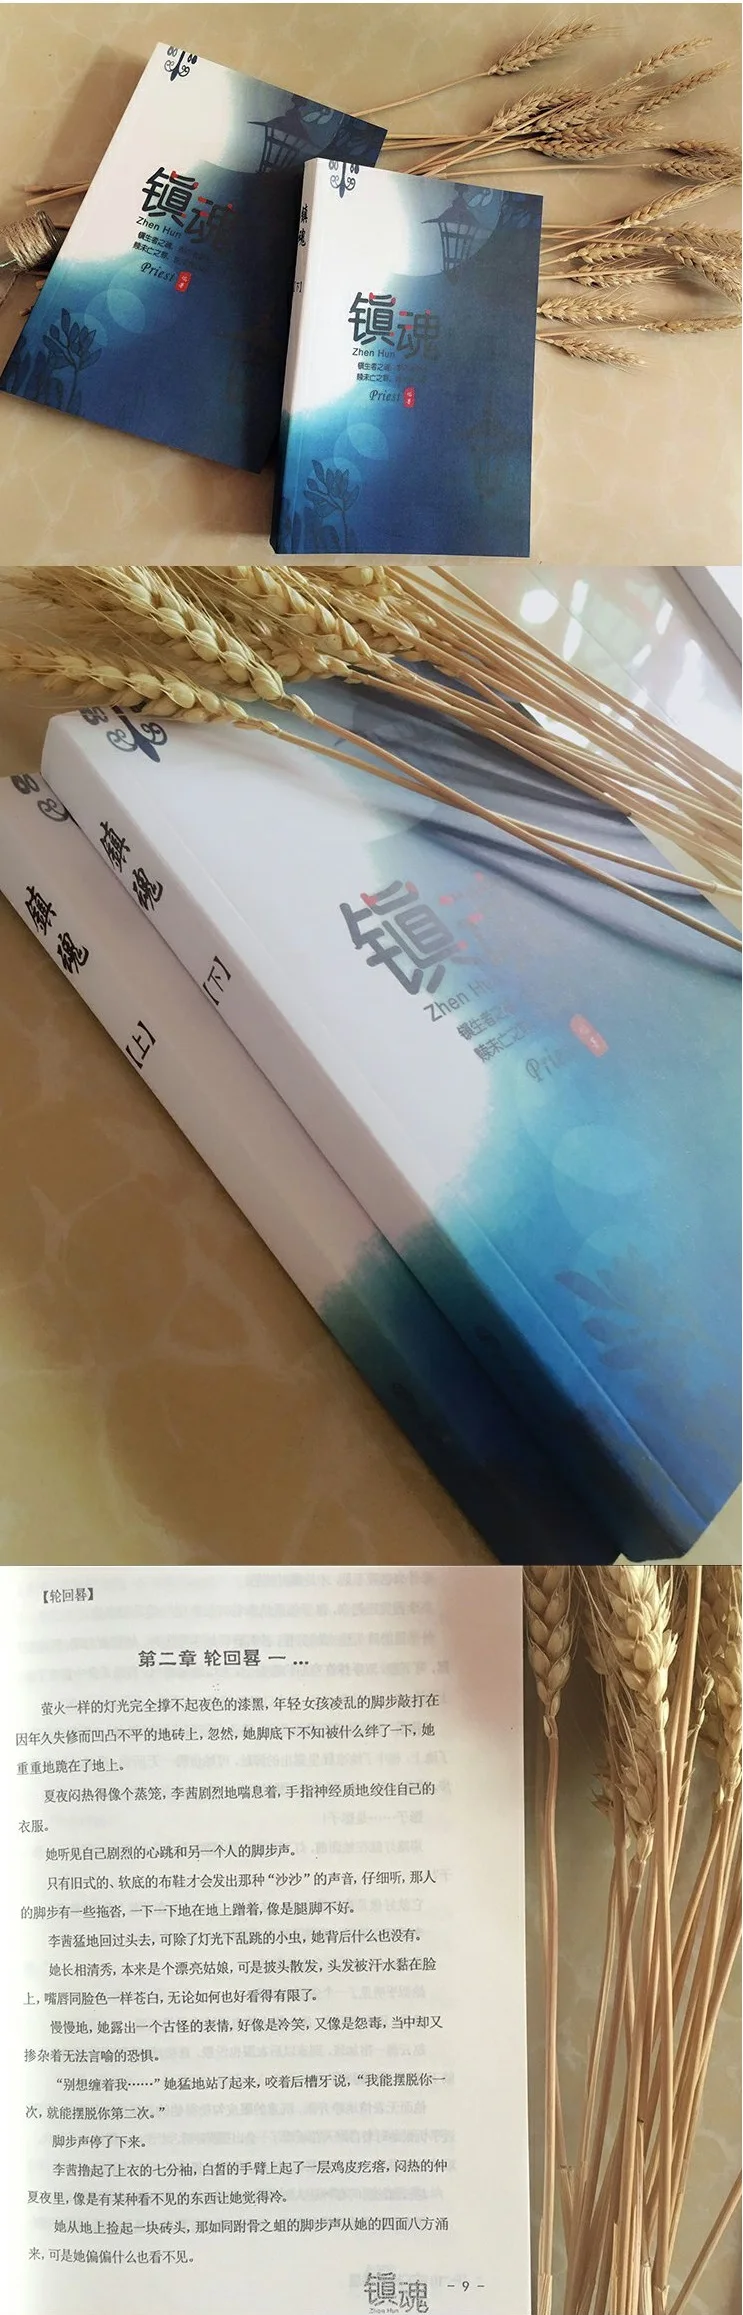 2 книги Zhen Hun Guardian от жреца китайская повесть художественная книга китайская ТВ Драма Программа повесть Чжу и Лонг актер